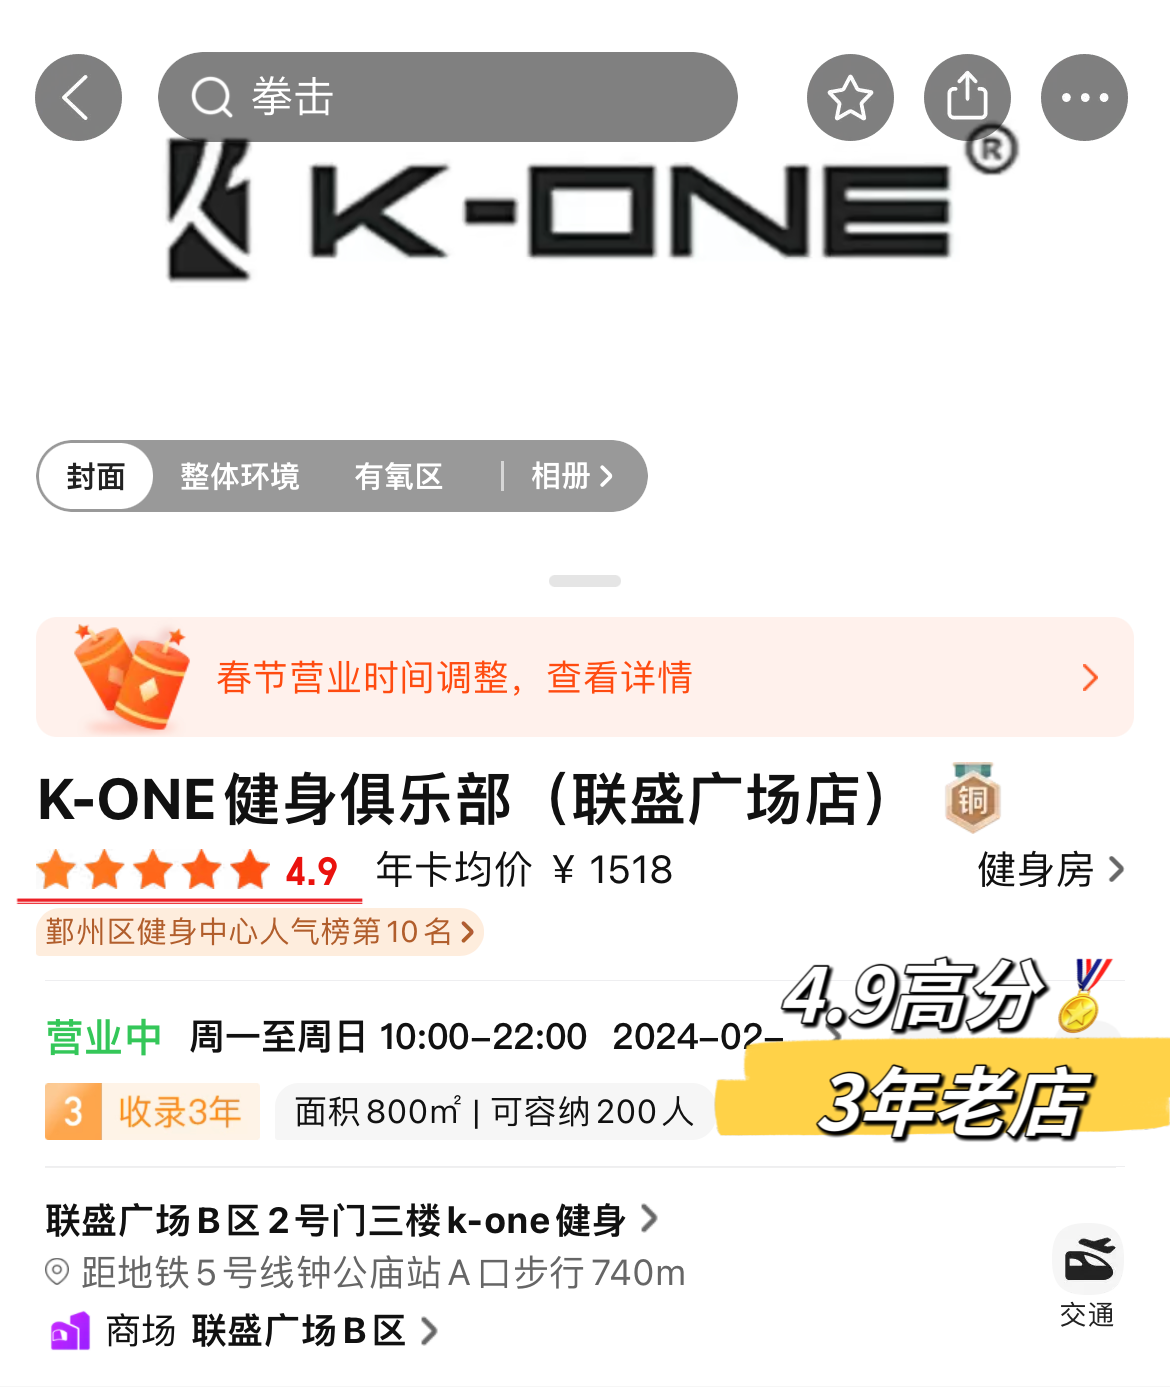  浙江宁波K-one健身俱乐部